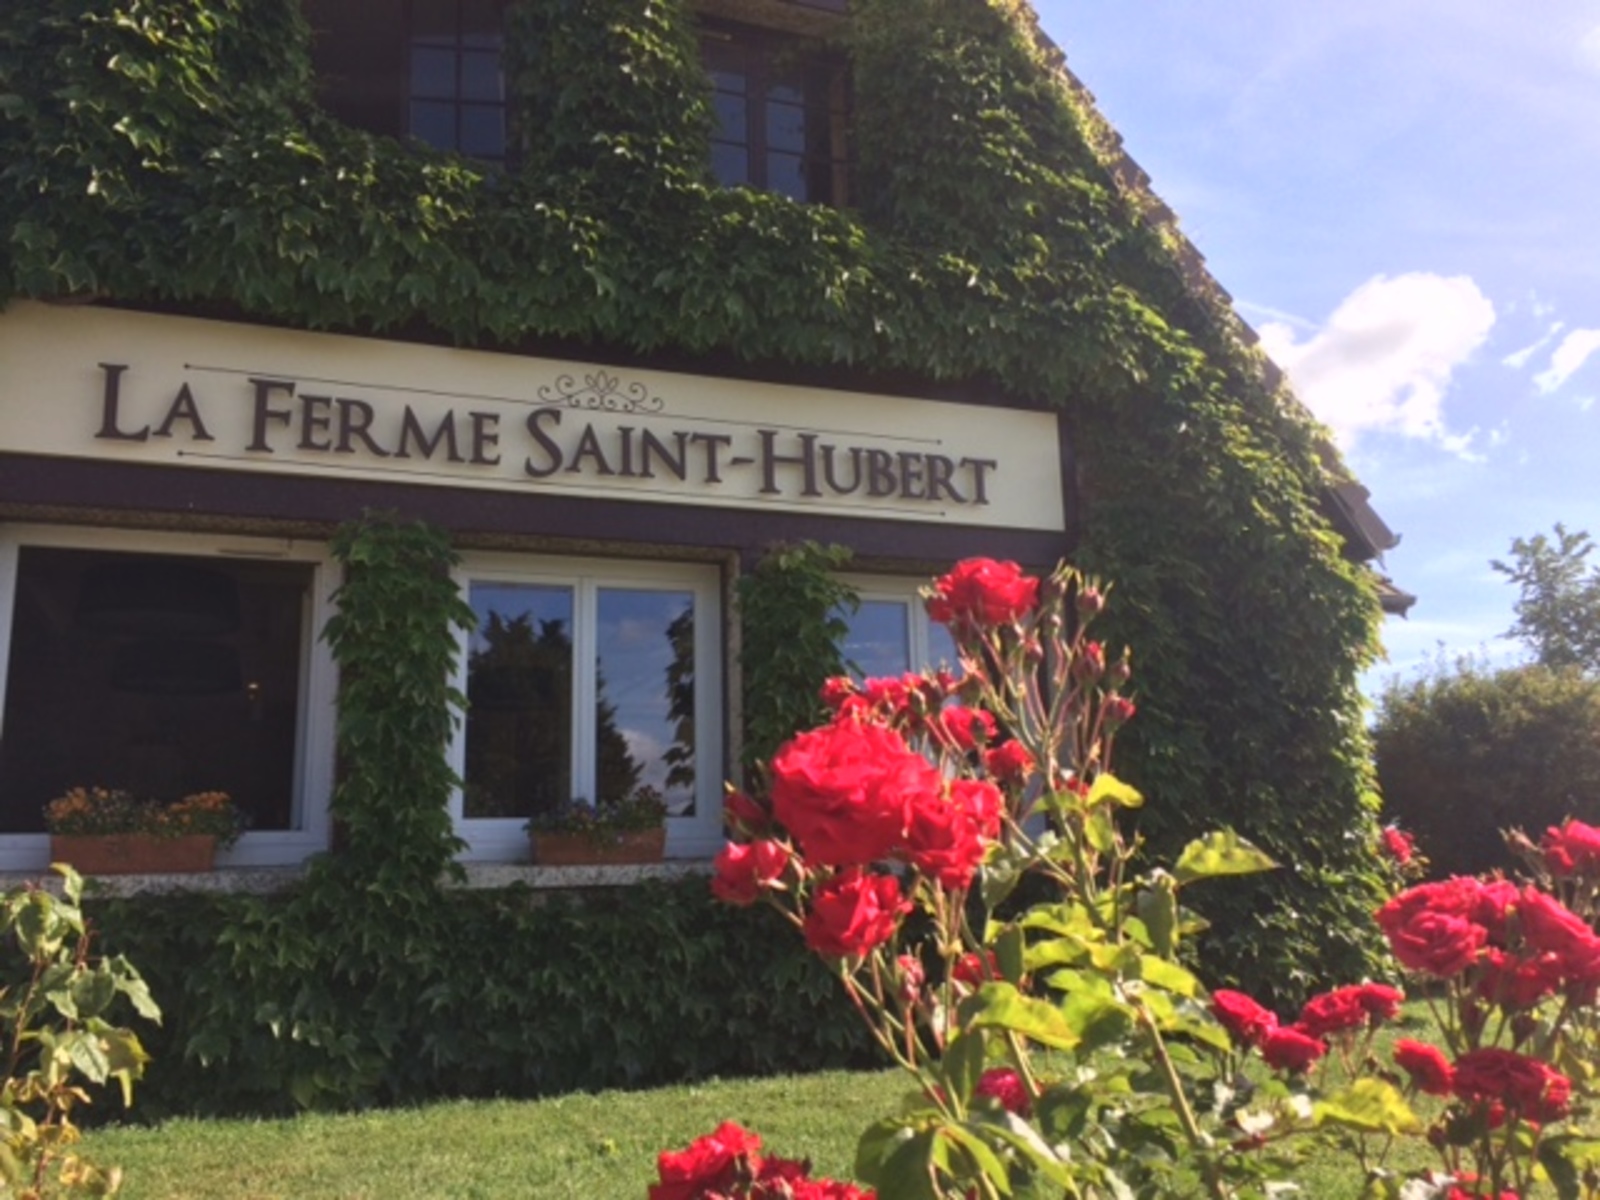 La Ferme Saint-Hubert, entre Caen et la mer, un endroit paisible pour profiter de la gastronomie locale